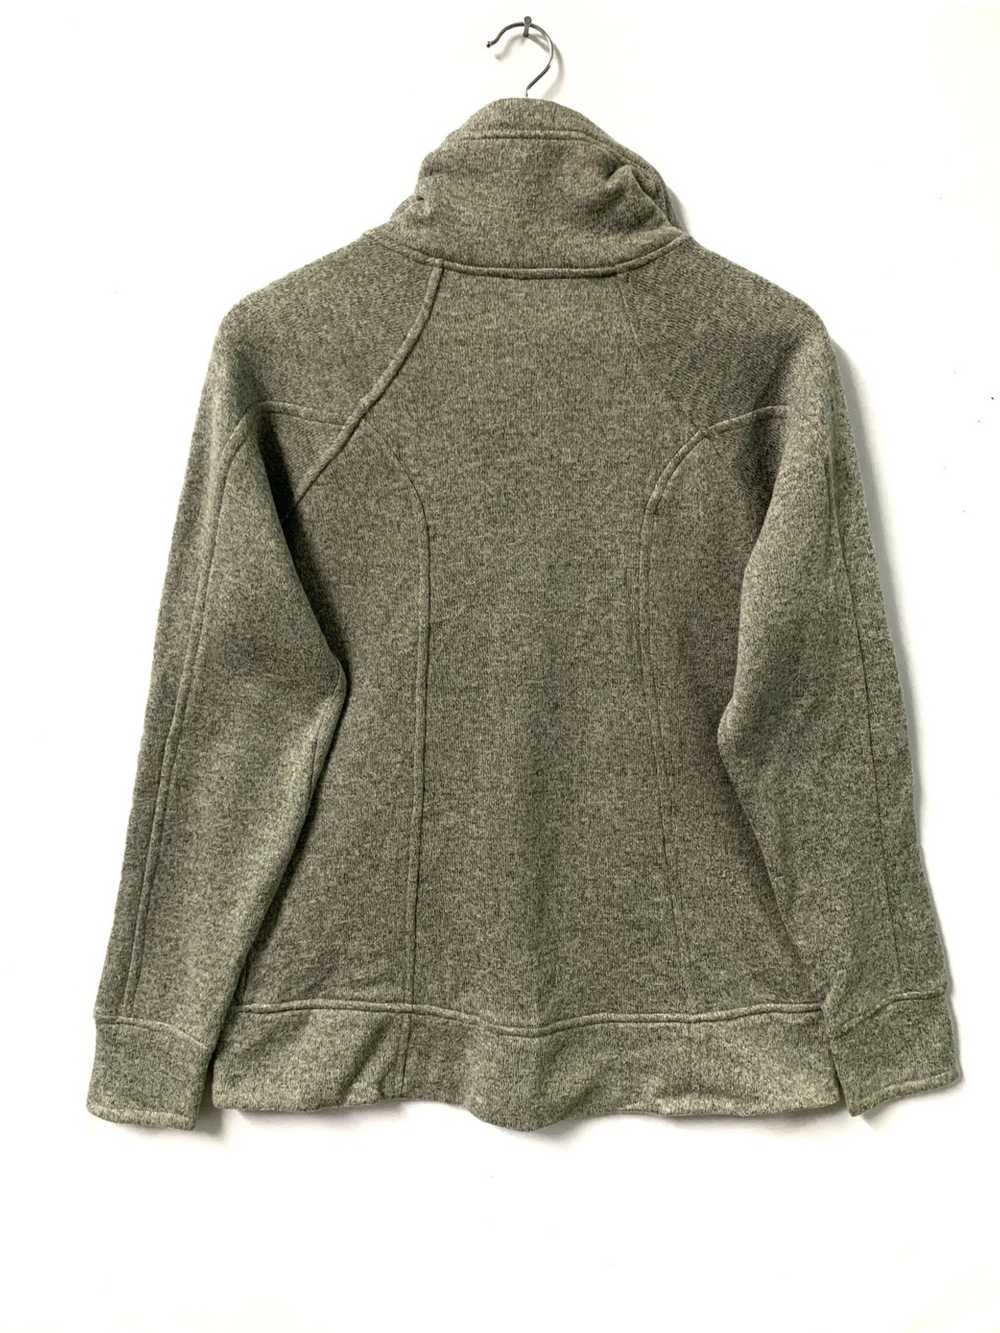 avalanche outdoor supply company mens fleece jacket